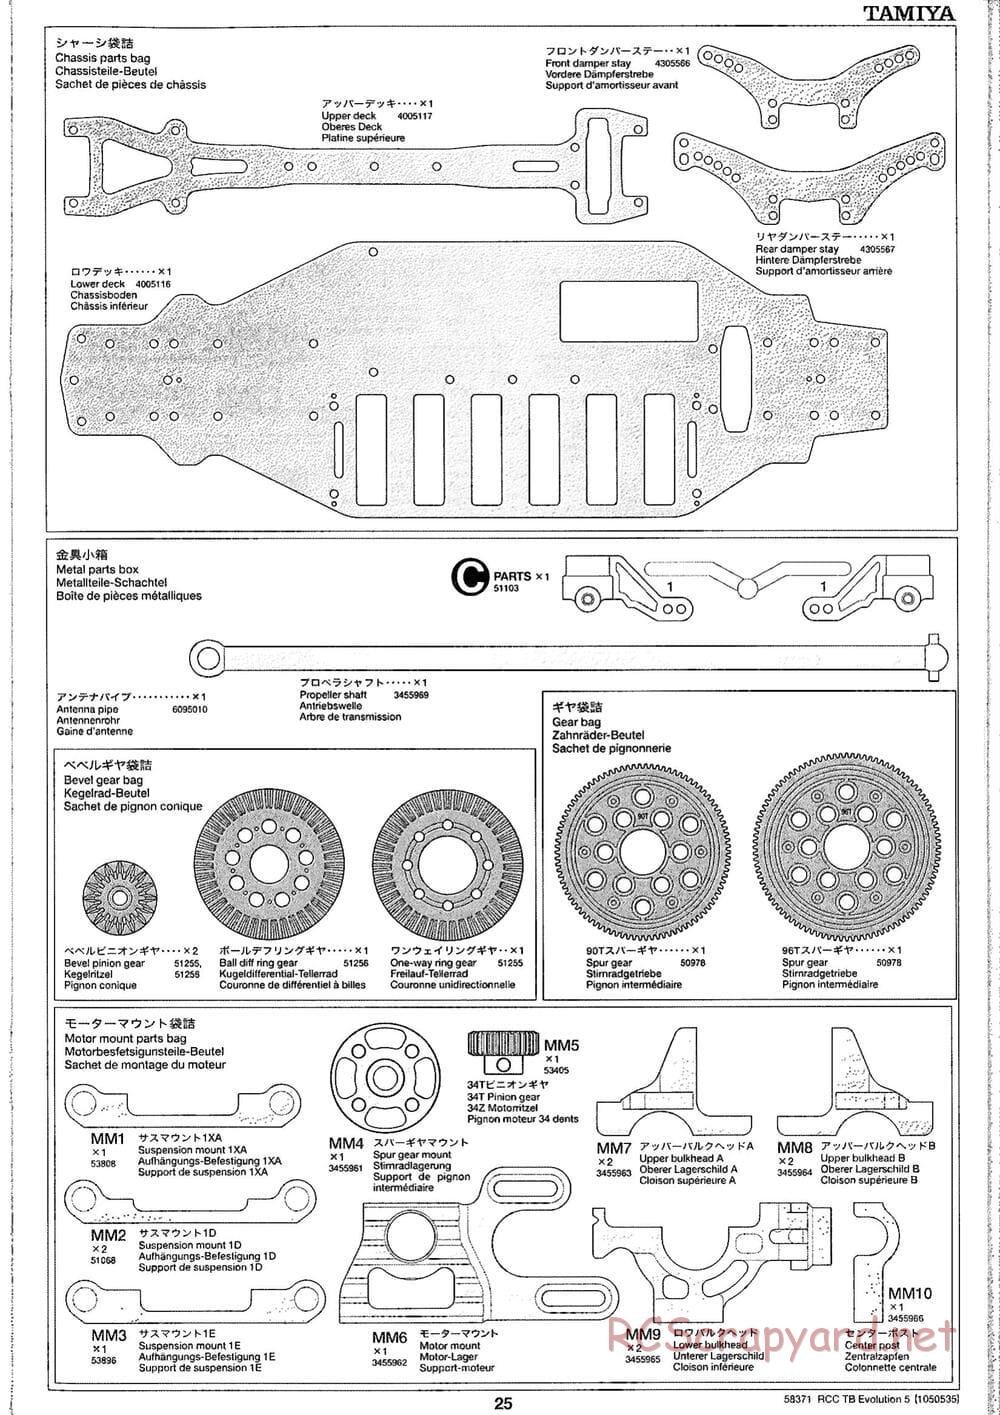 Tamiya - TB Evolution V Chassis - Manual - Page 25